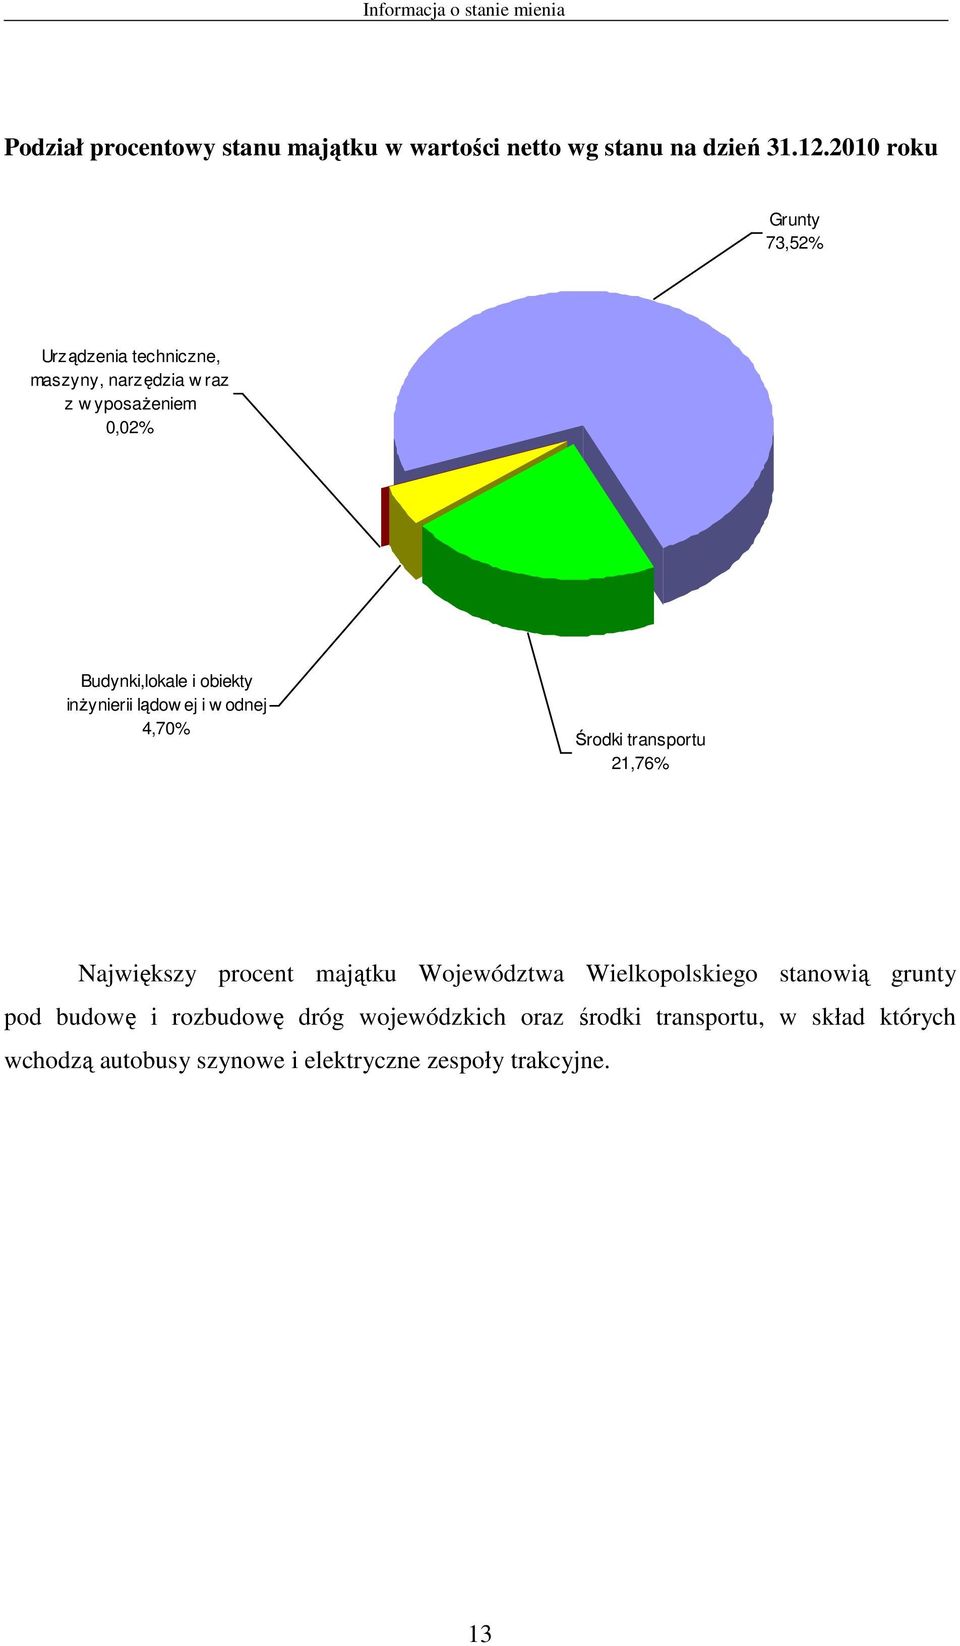 inżynierii lądow ej i w odnej 4,70% Środki transportu 21,76% Największy procent majątku Województwa Wielkopolskiego